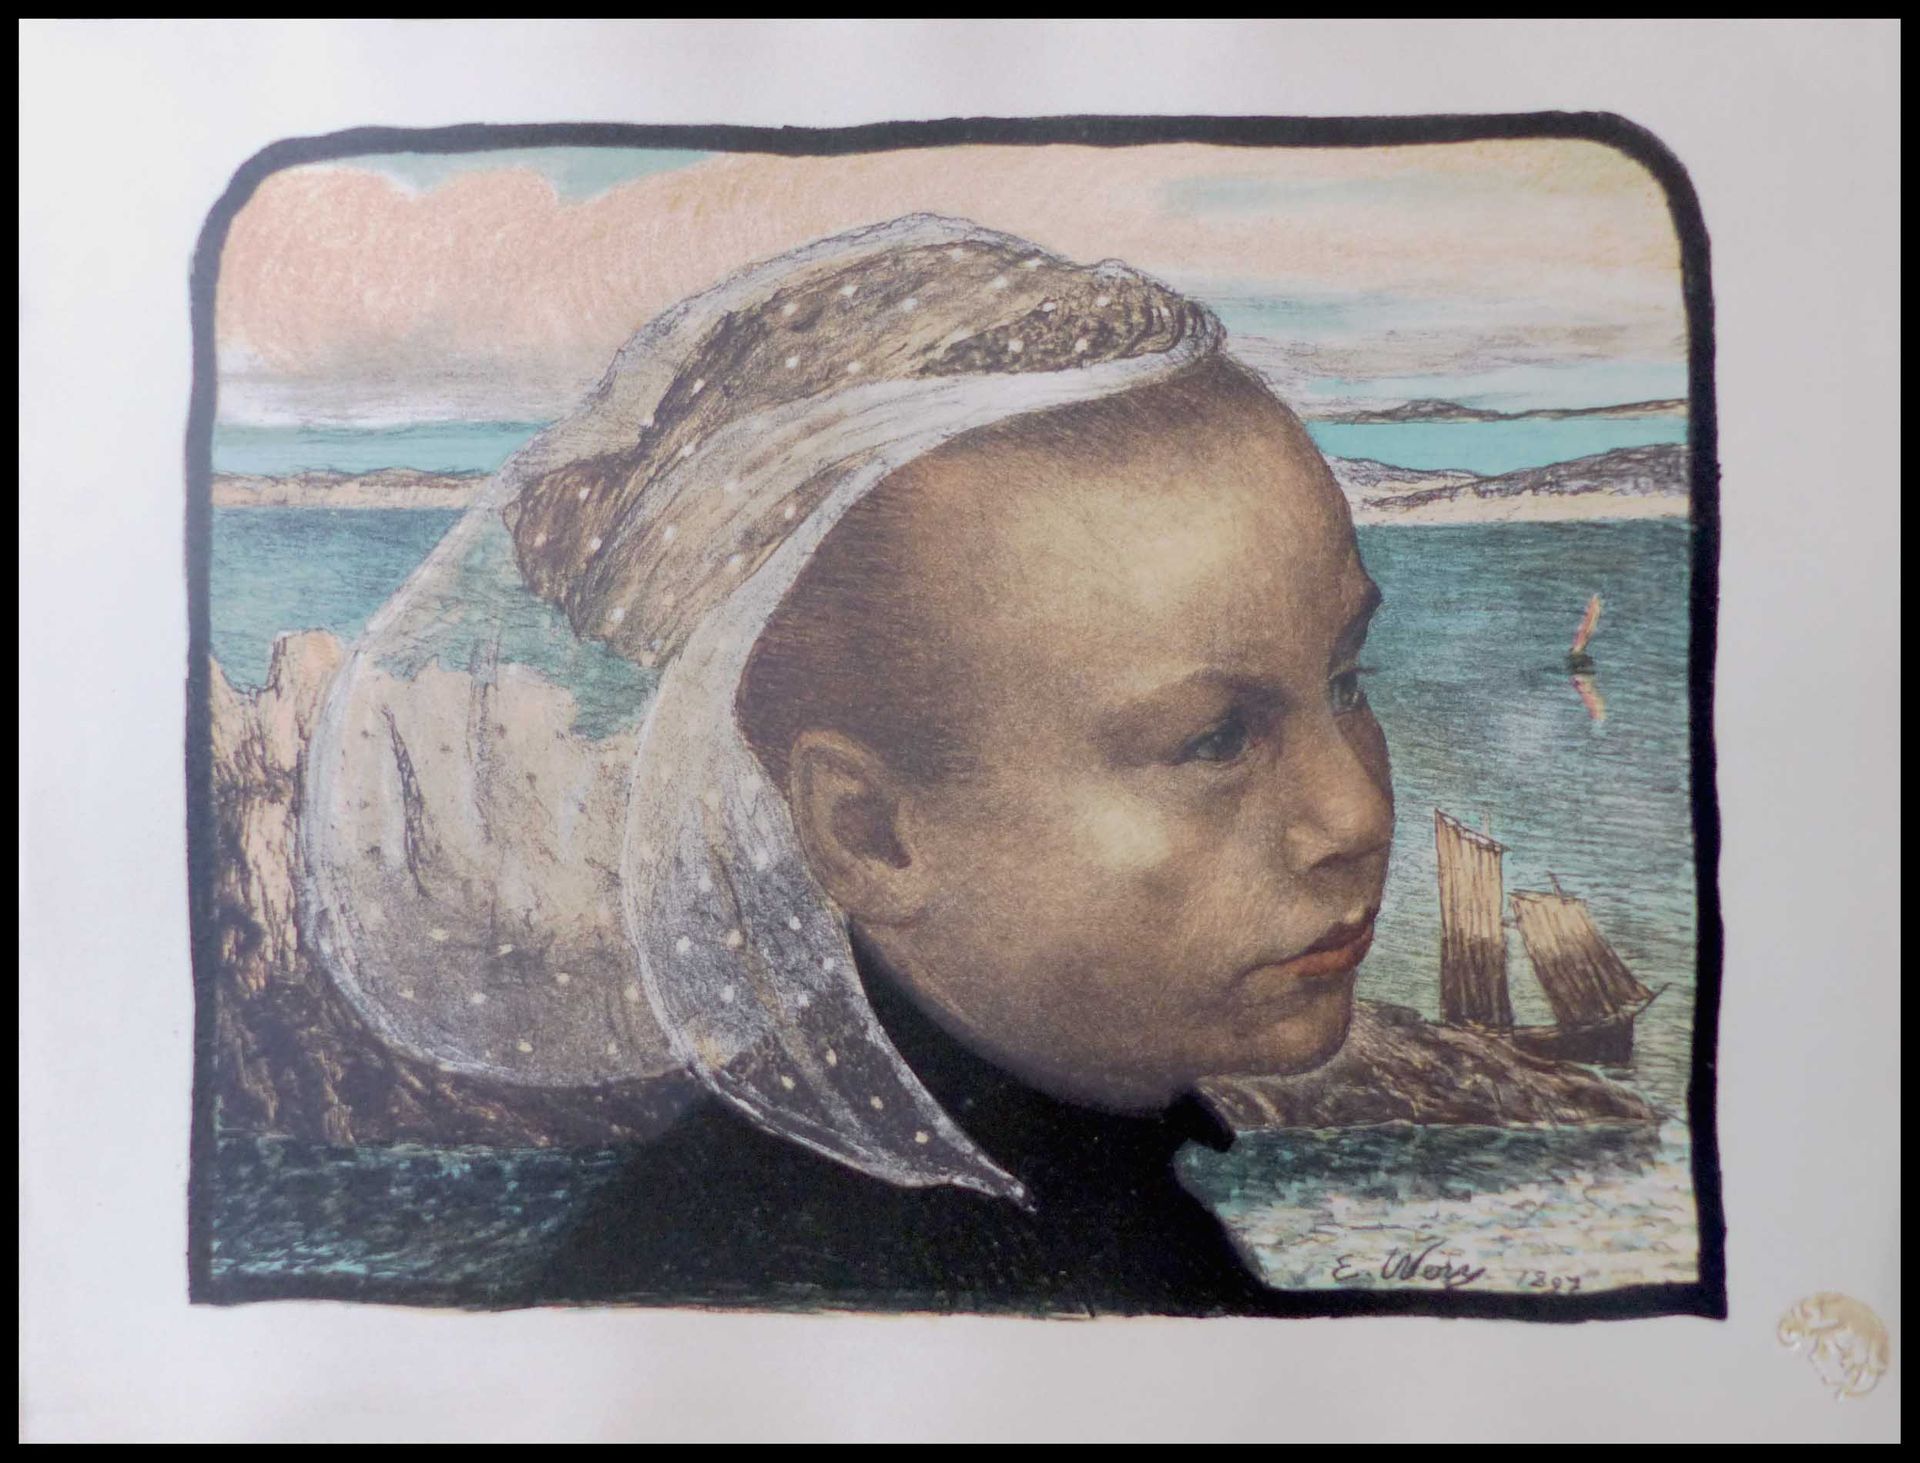 E. WERY 埃米尔-奥古斯特-韦里：(1868 - 1935)

英国

1897

原始石版画

板块内有签名和日期的作品

尺寸：40.7 x 30.6&hellip;